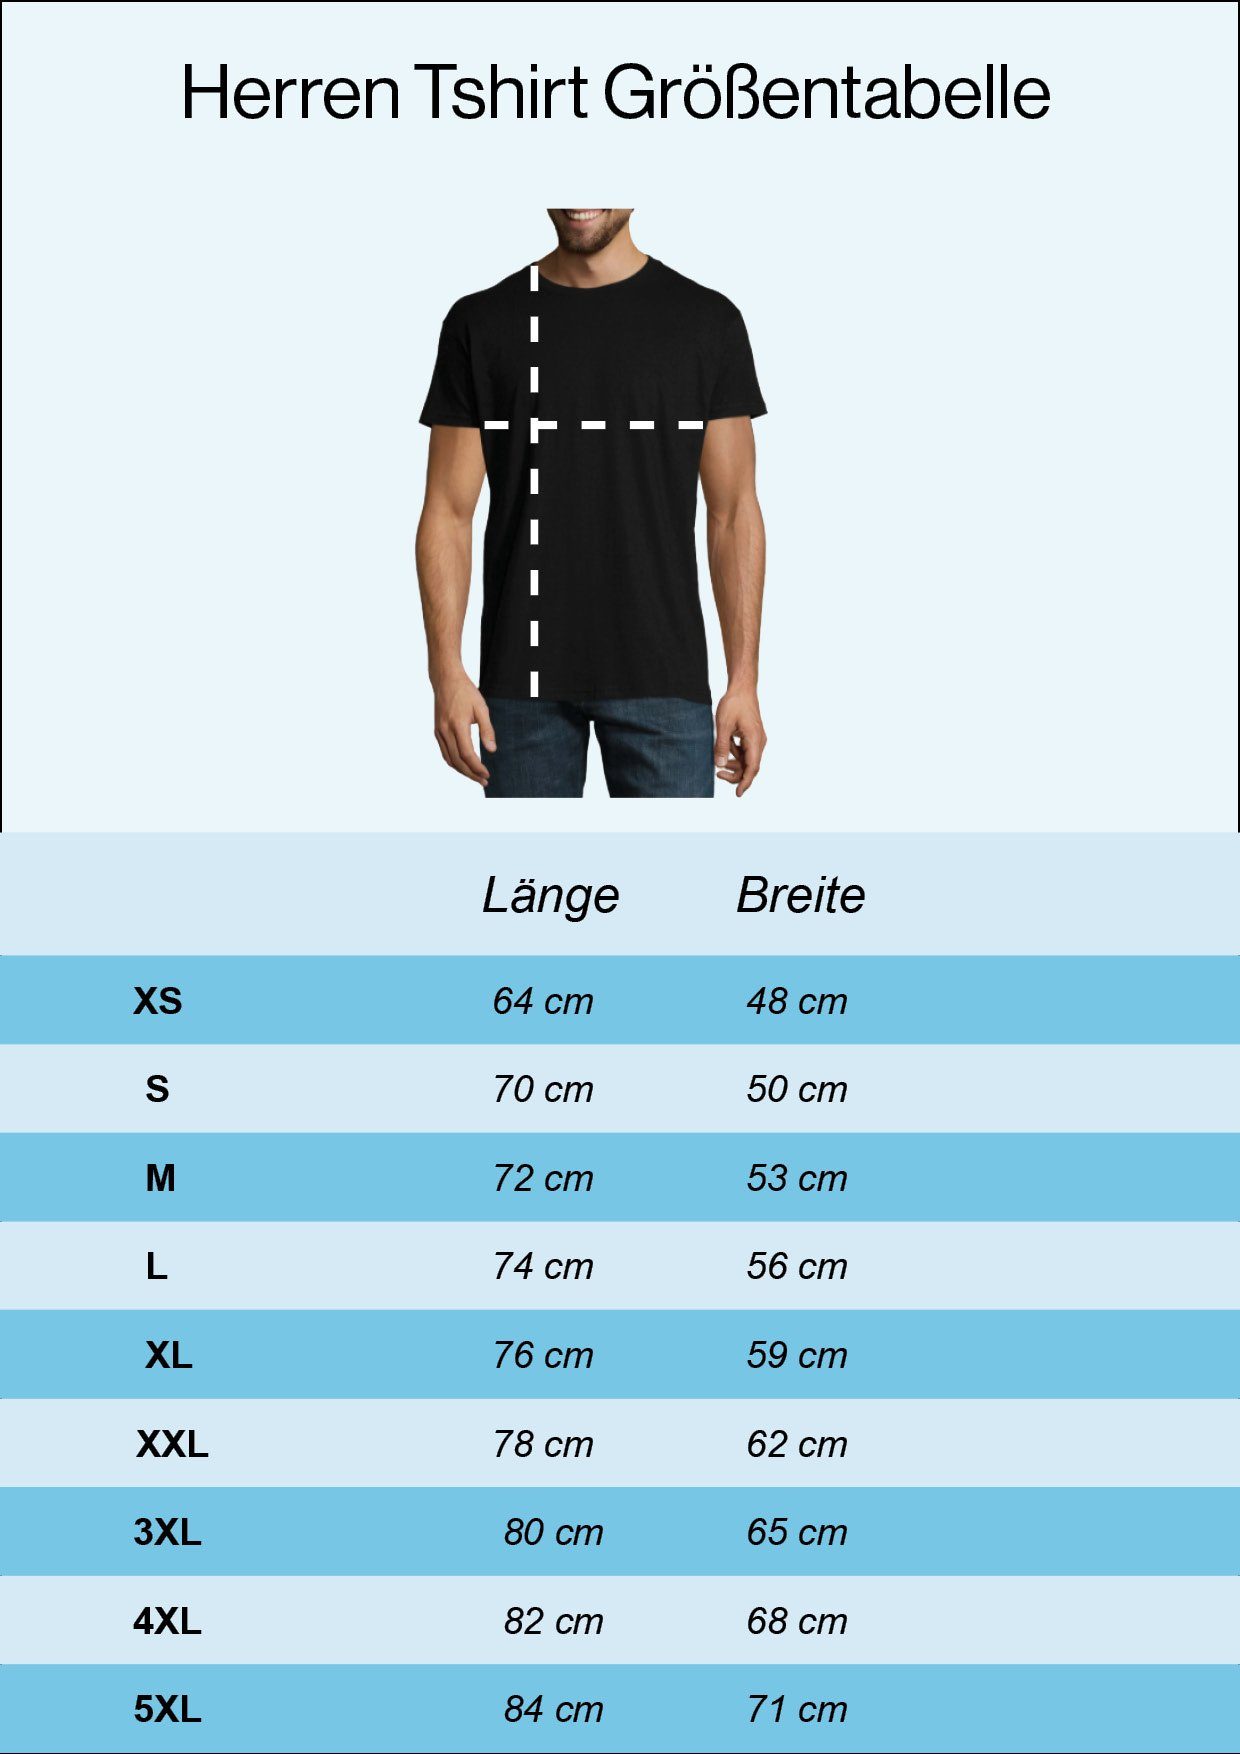 Youth Designz T-Shirt Vegan Herren Schwarz Frontprint Shirt mit trendigem